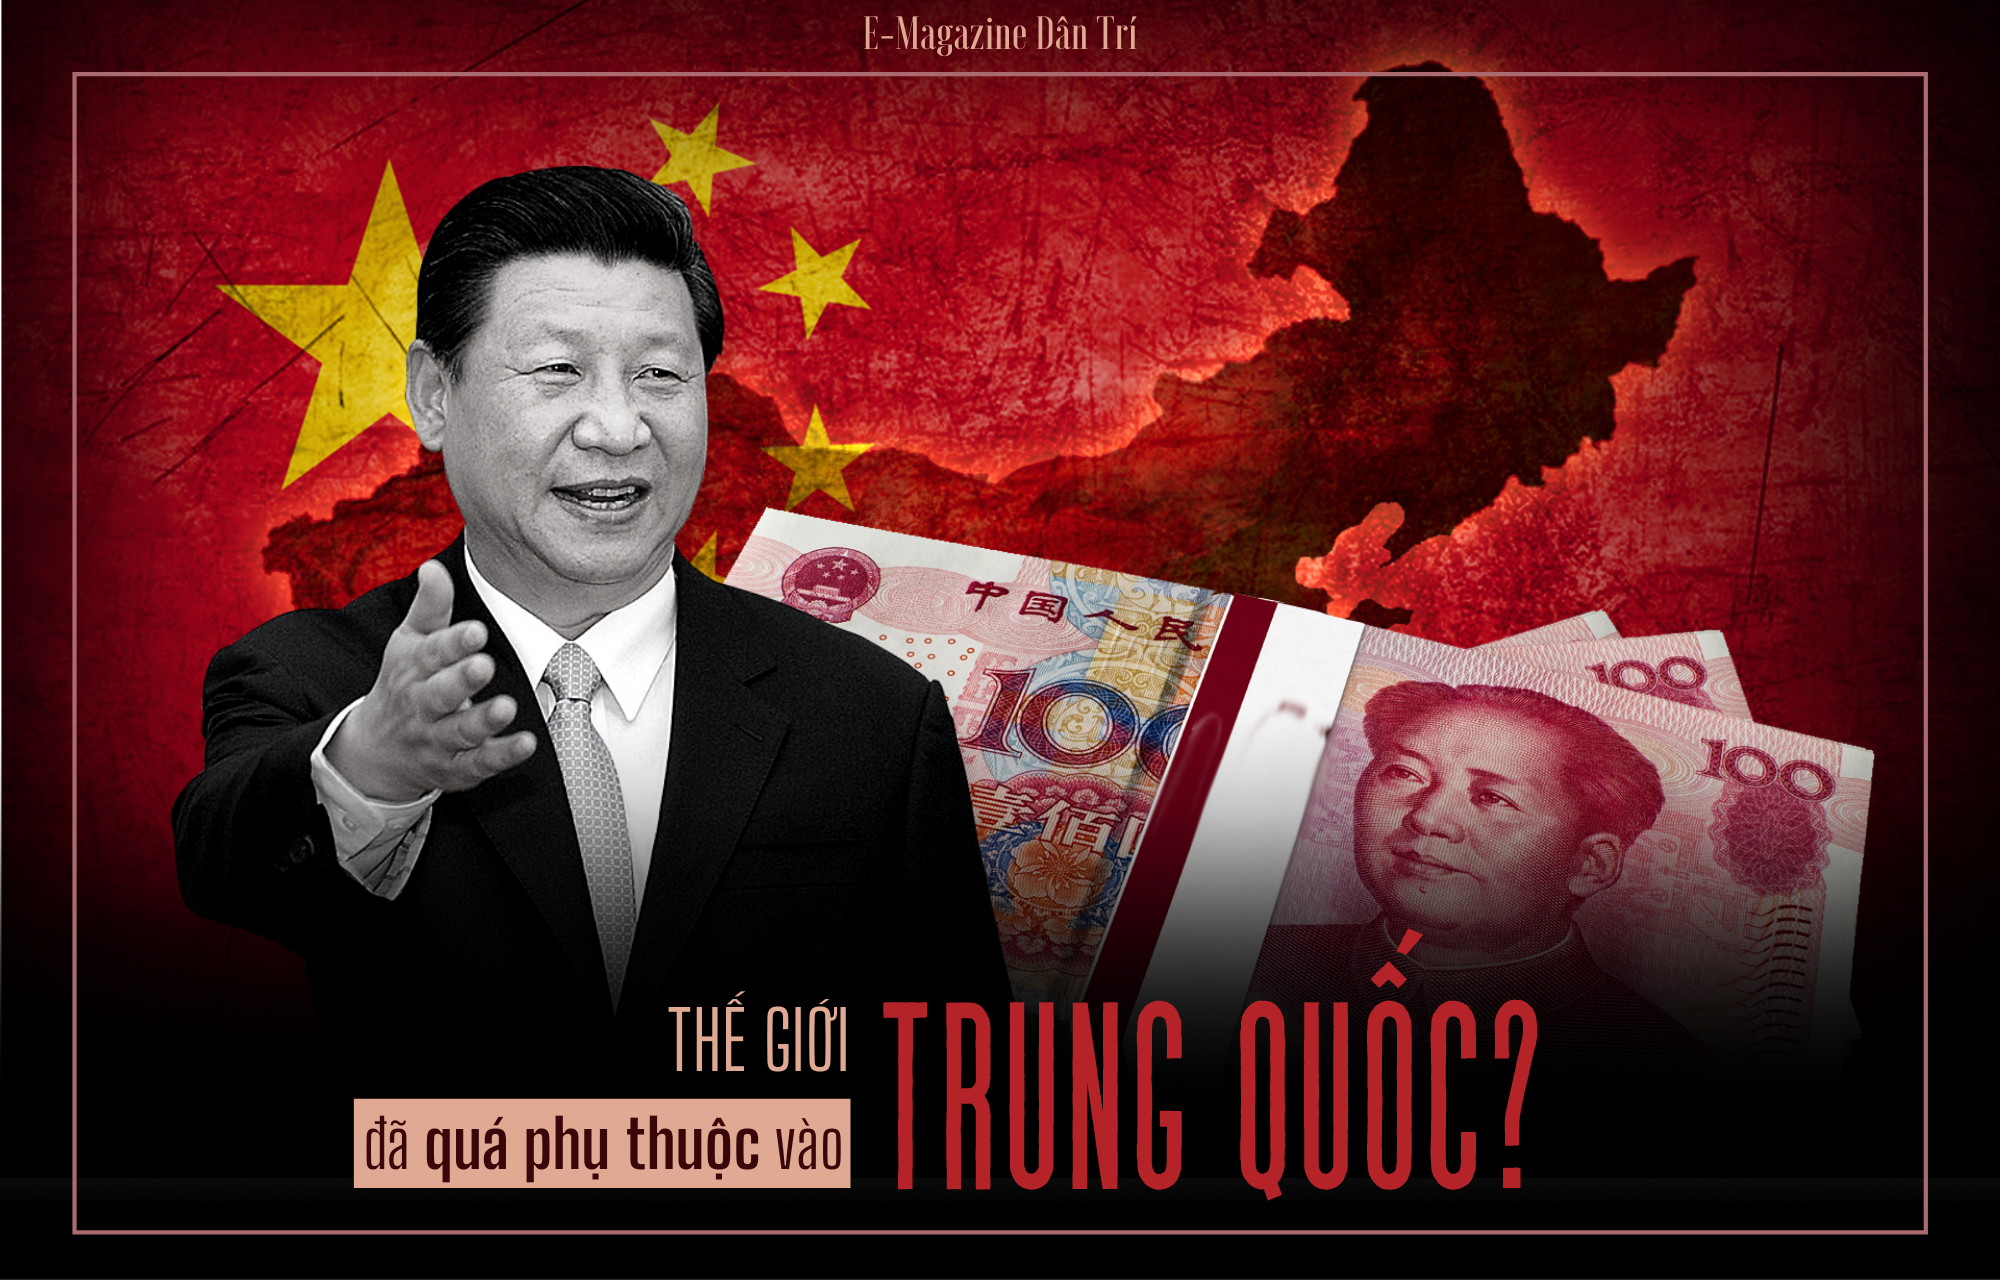 Thế giới đã quá phụ thuộc vào nền kinh tế Trung Quốc?